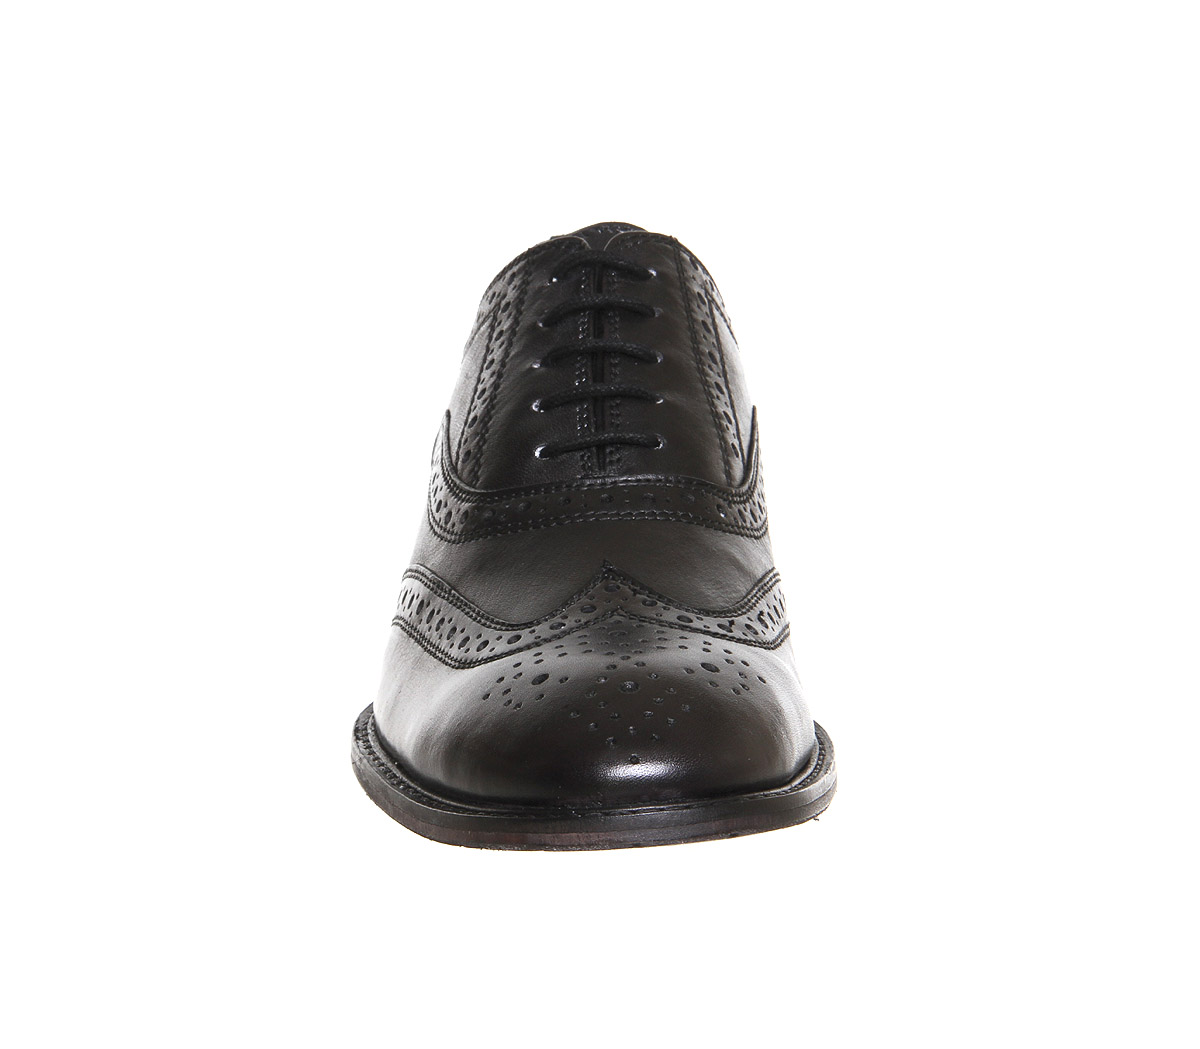 OFFICE Attick Brogue Black Leather - Men’s Smart Shoes